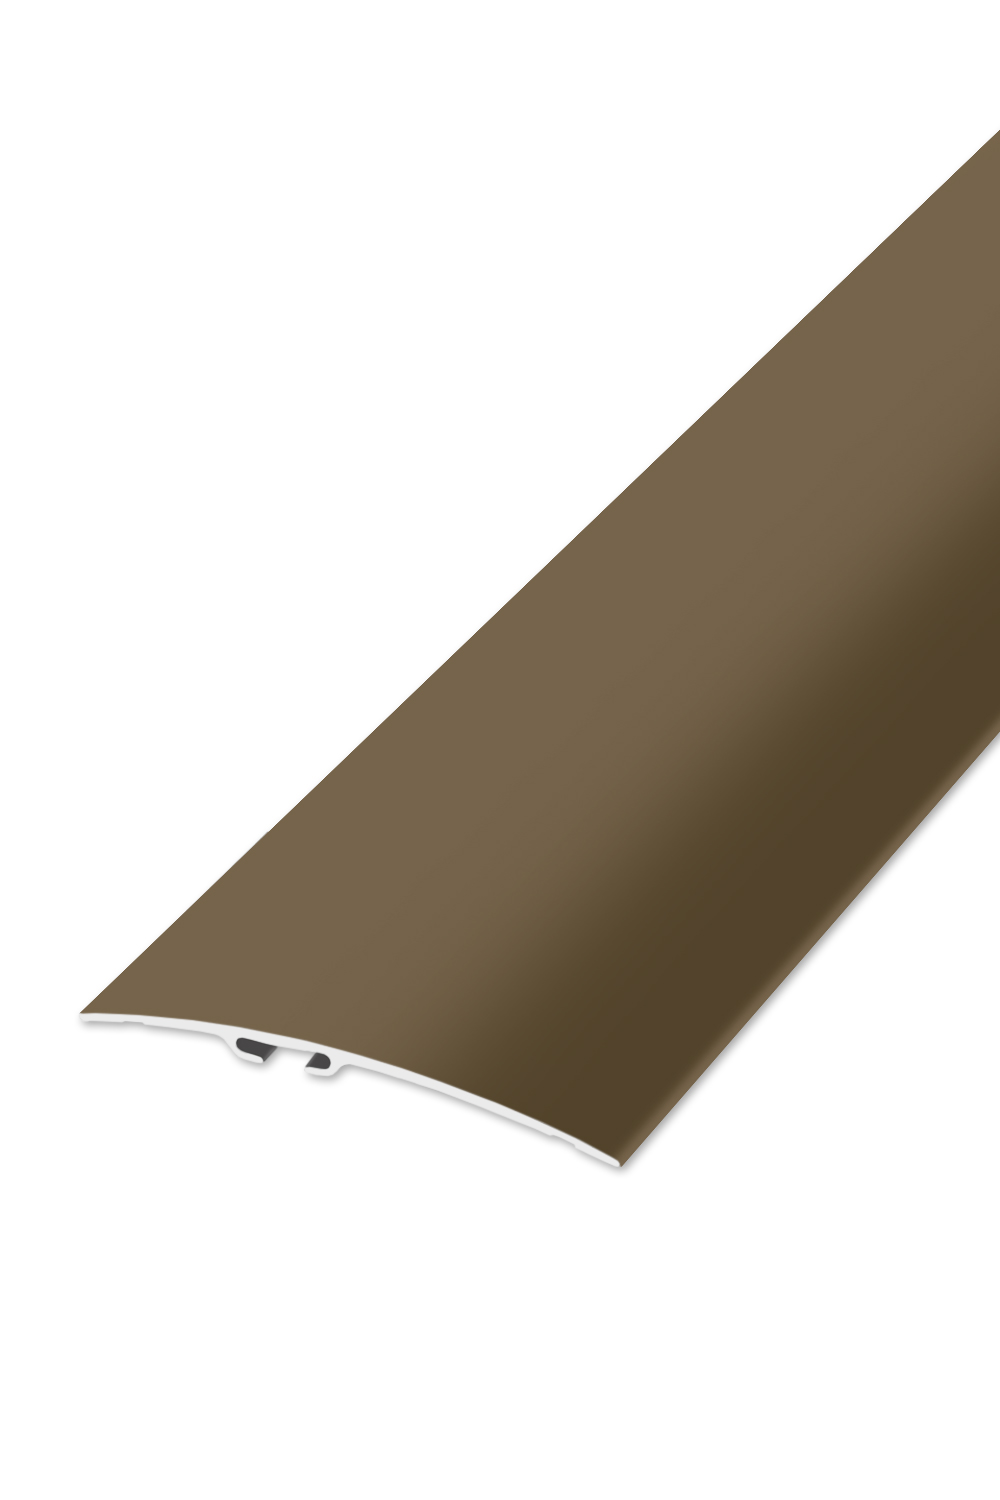 Přechodová lišta STANDARD 80 - Bronz 90 cm